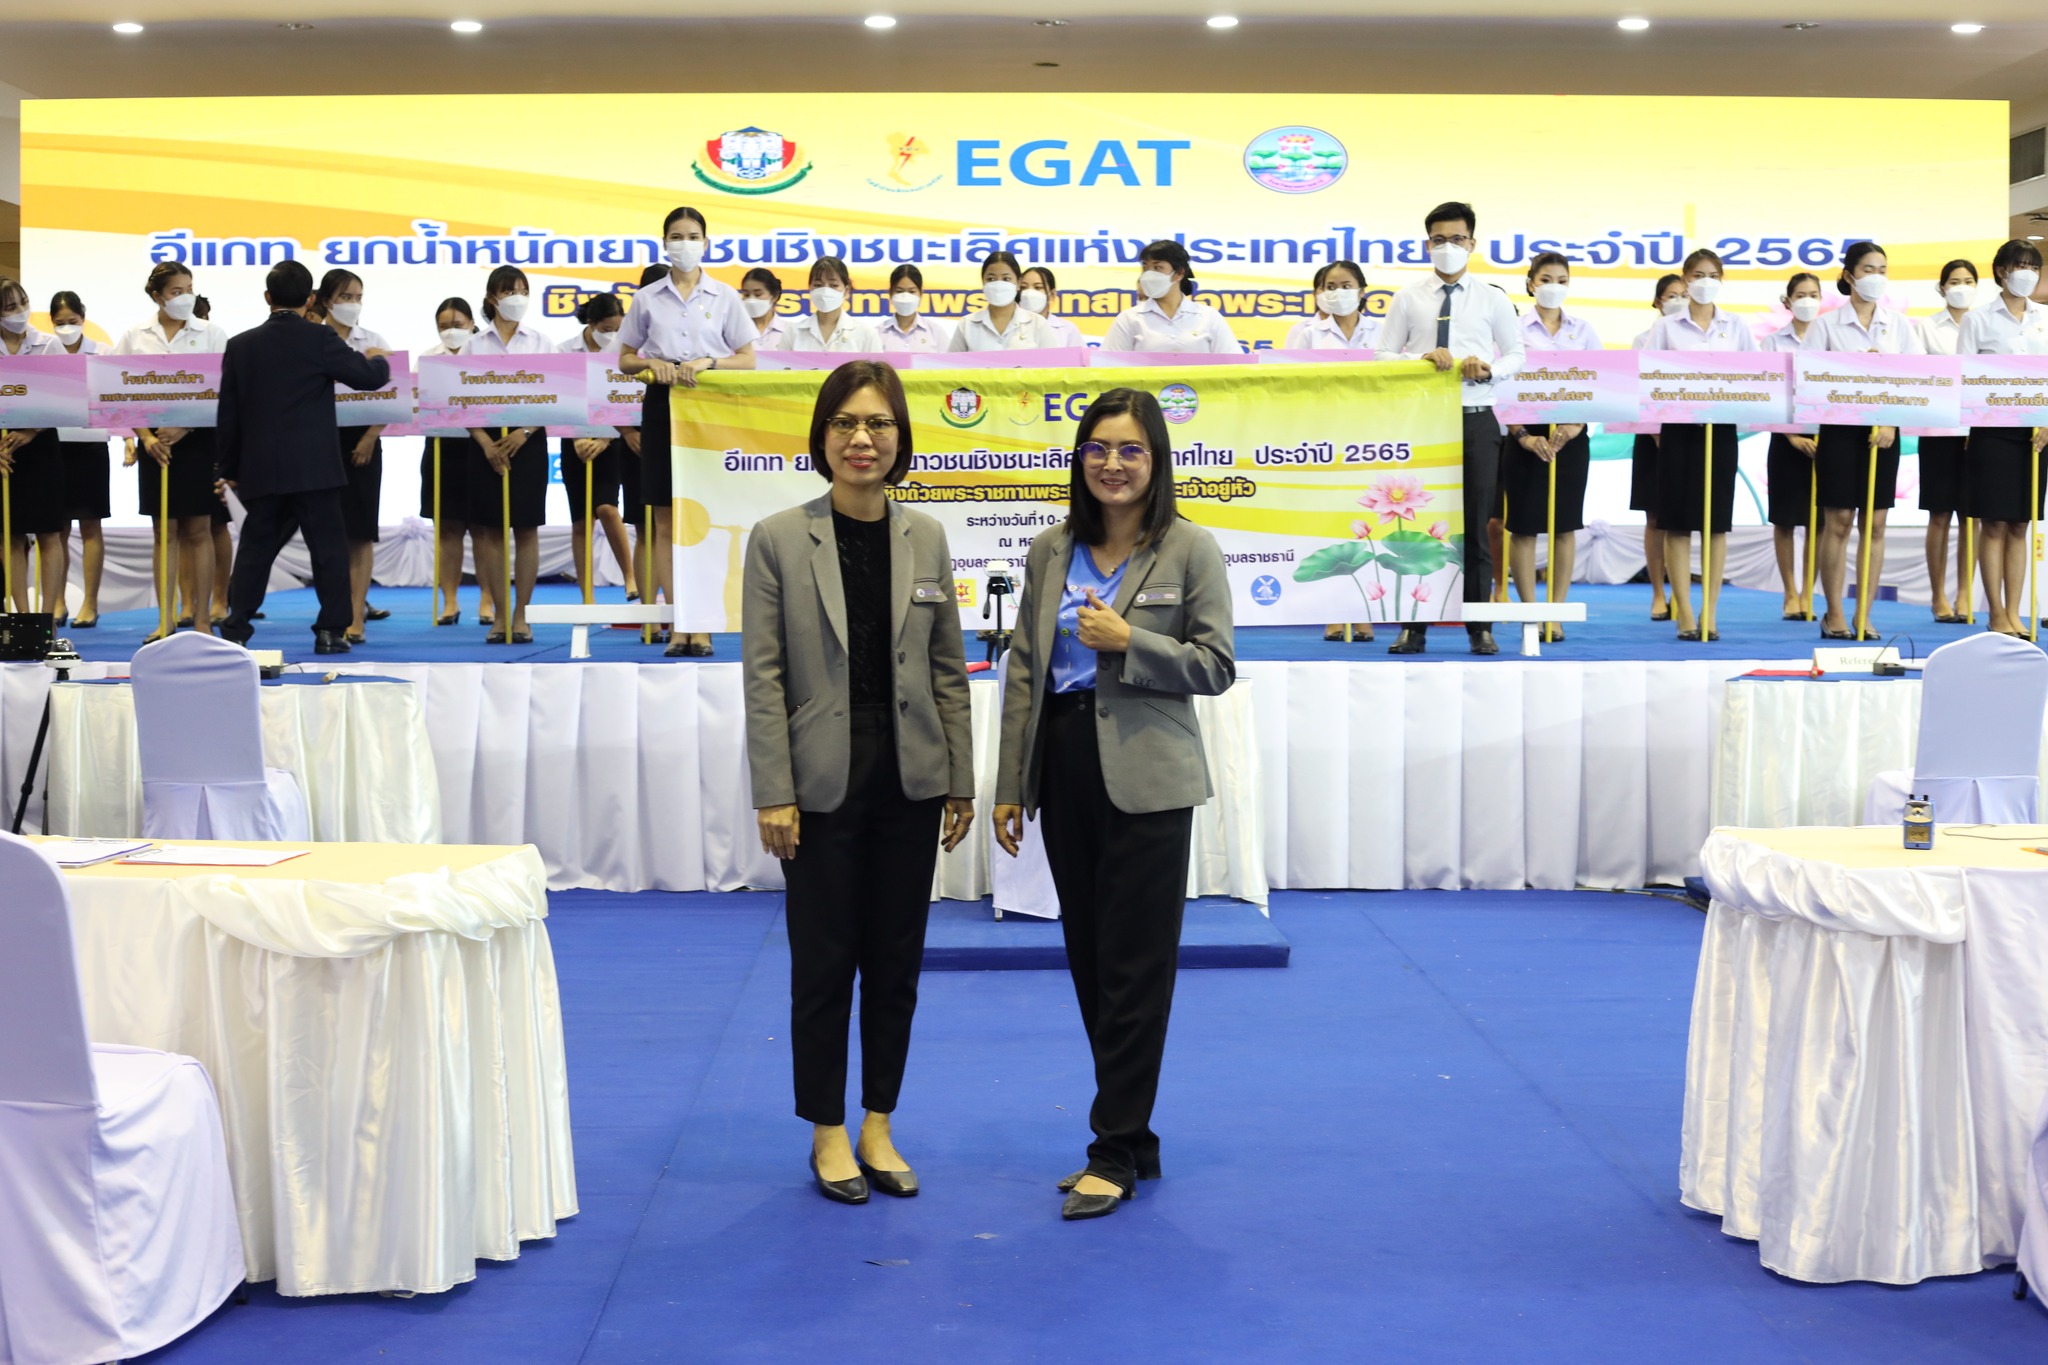 วันที่ 10 ต.ค. 65  ณ หอประชุมไพรพะยอม มหาวิทยาลัยราชกัฏอุบลราชธานี:ร่วมงาน EGAT อีแกท ยกน้ำหนักเยาวชนชิงชนะเลิศแห่งประเทศไทย ประจำปี 2565 ชิงถ้วยพระราชทานพระบาทสมเด็จพระเจ้าอยู่หัว